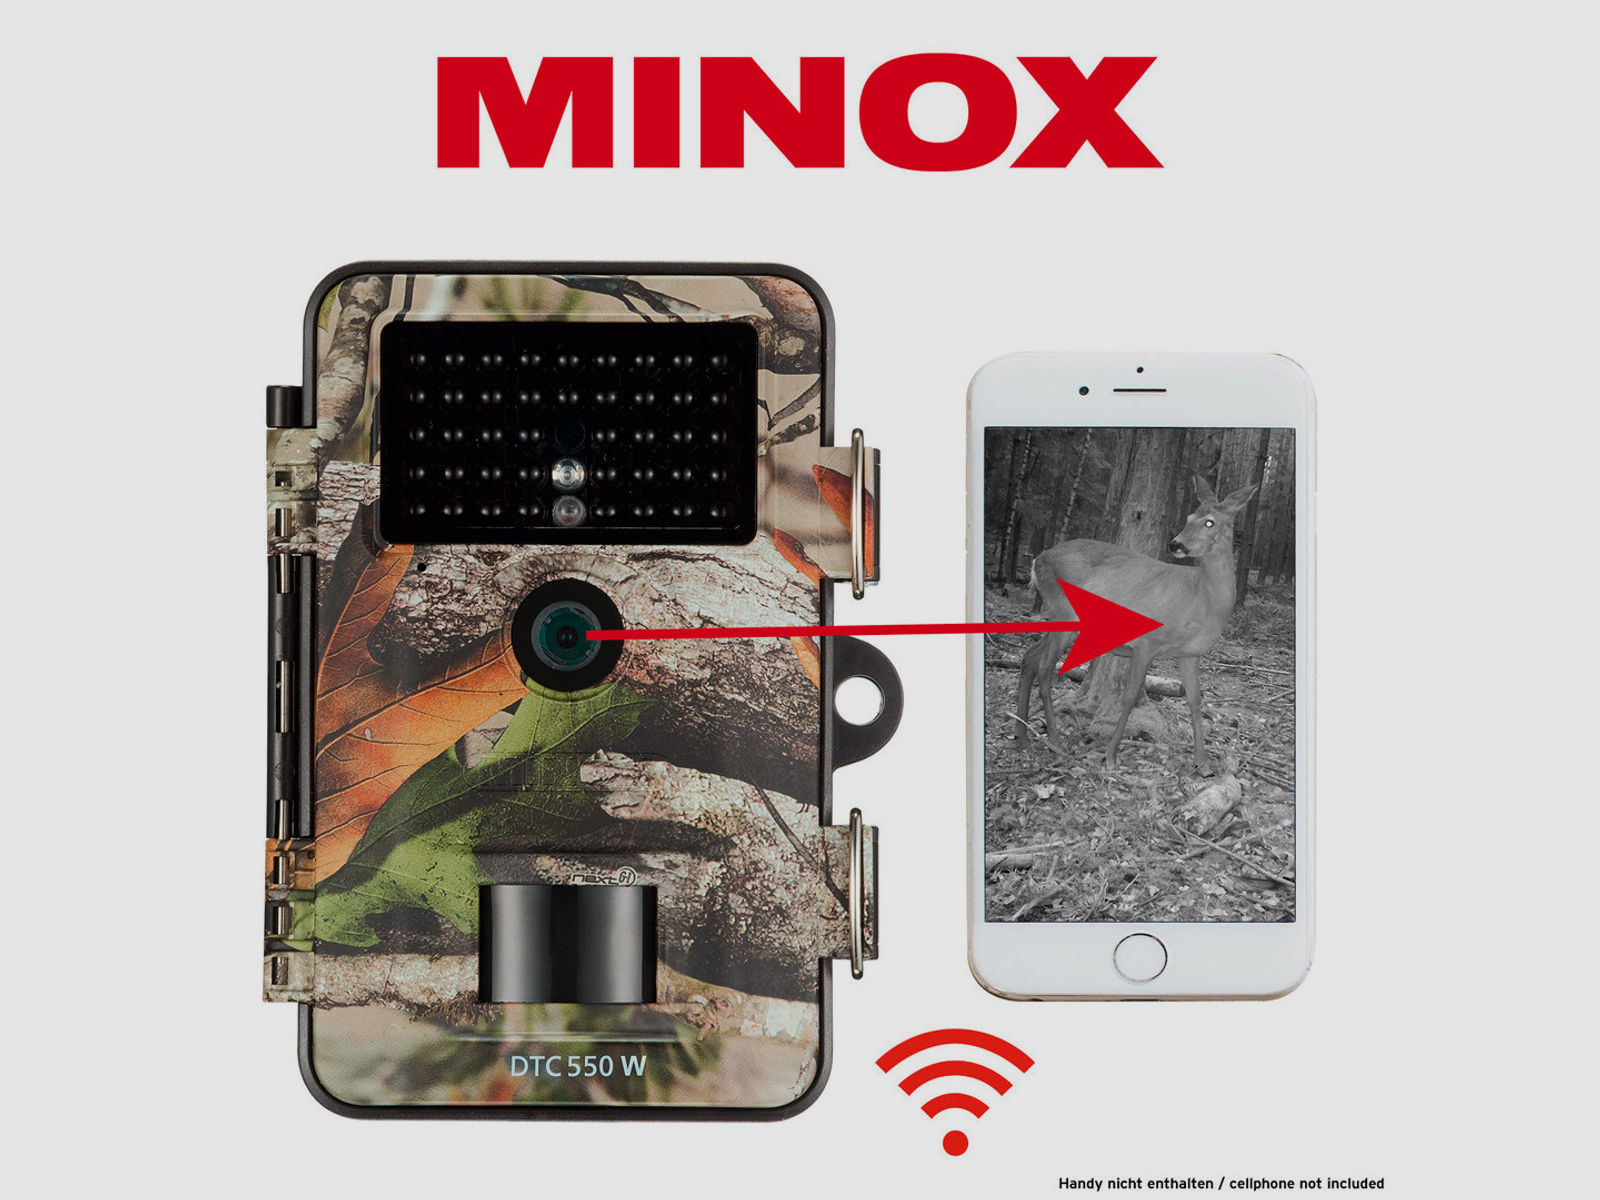 MINOX Wildkamera DTC 550 WiFi Camo